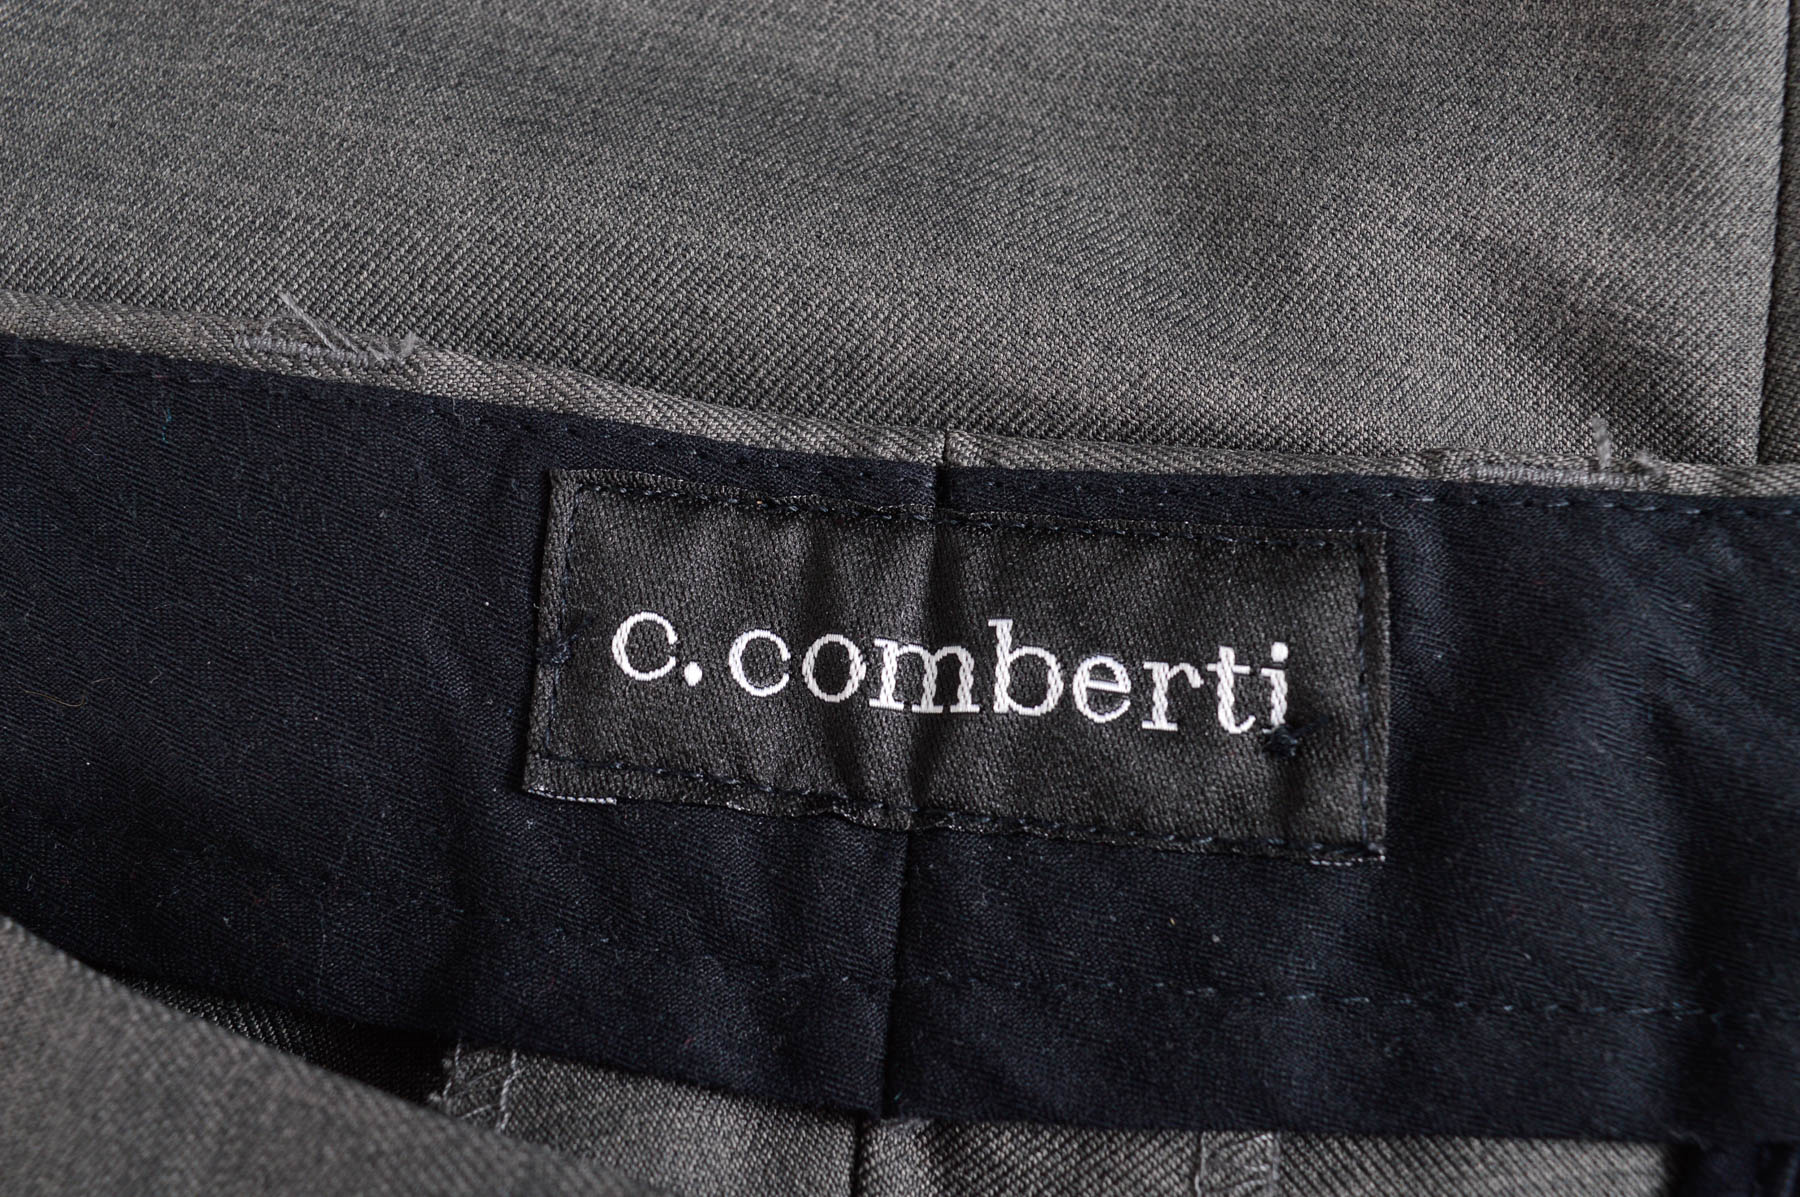 Pantalon pentru bărbați - C.Comberti - 2